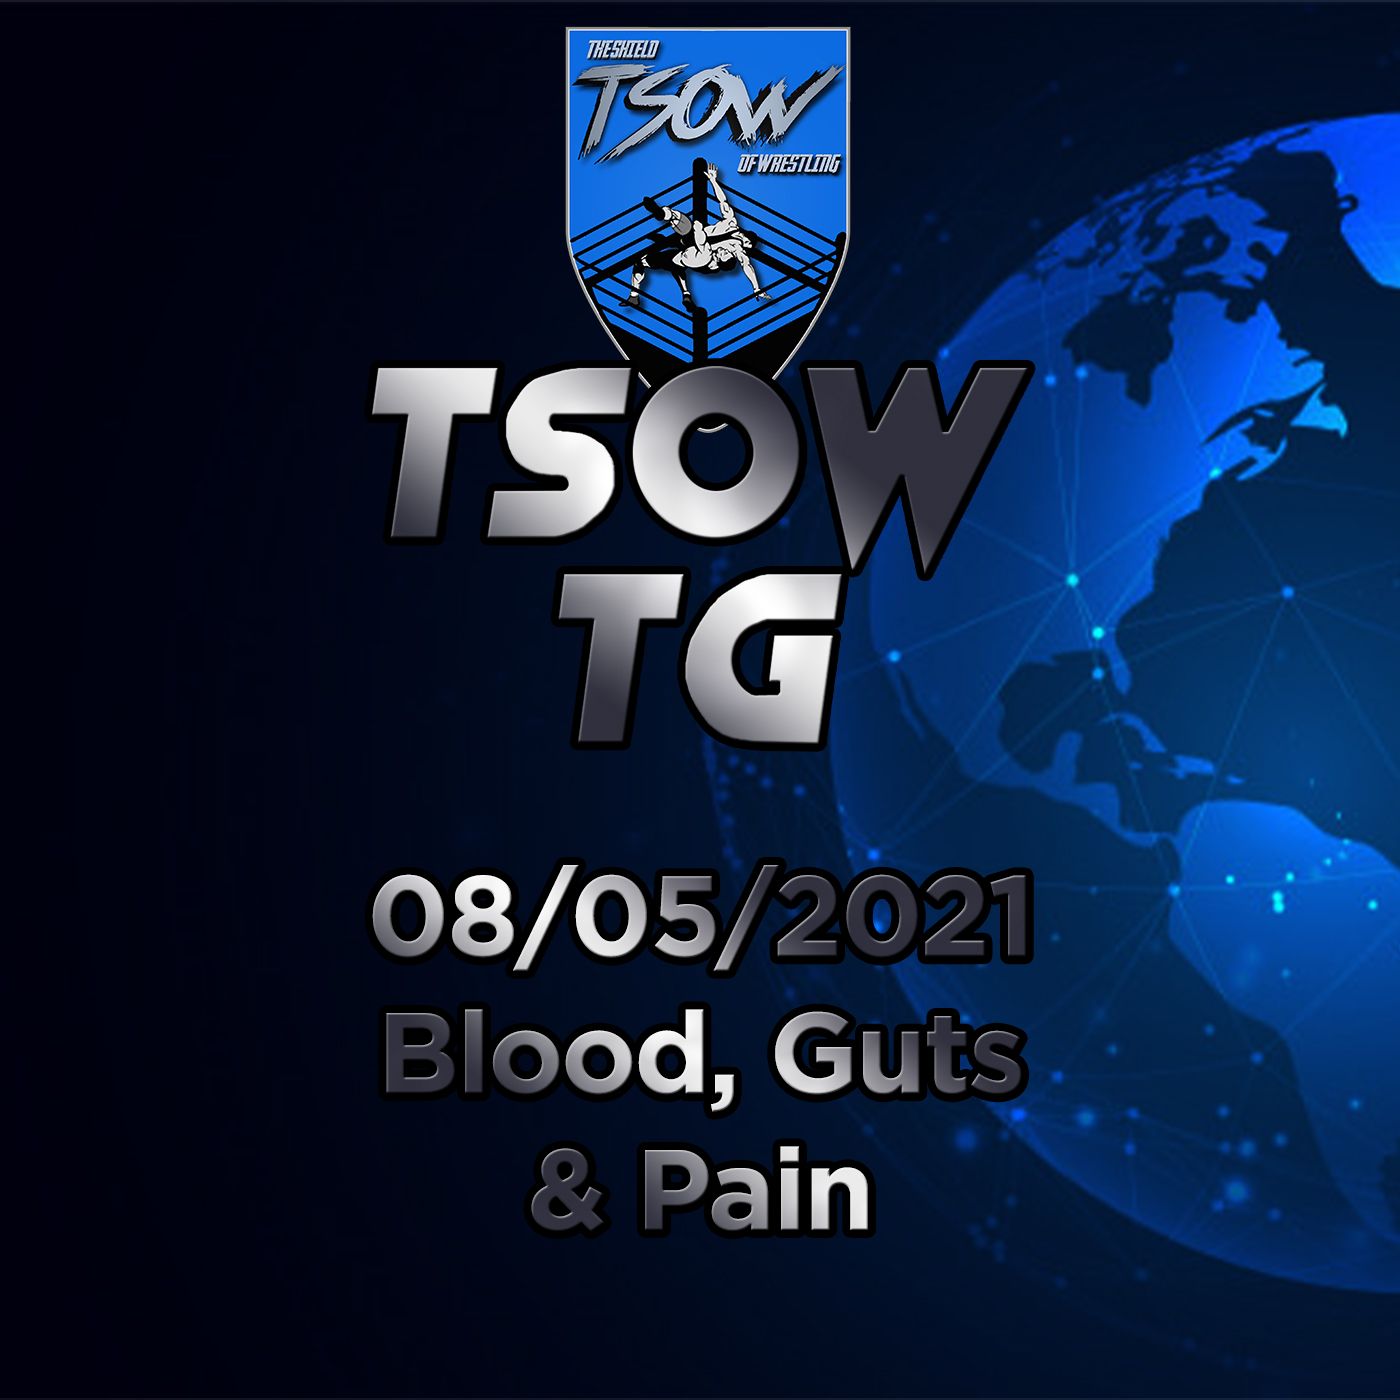 TSOW TG 07/05/21 - Blood, Guts and pain!